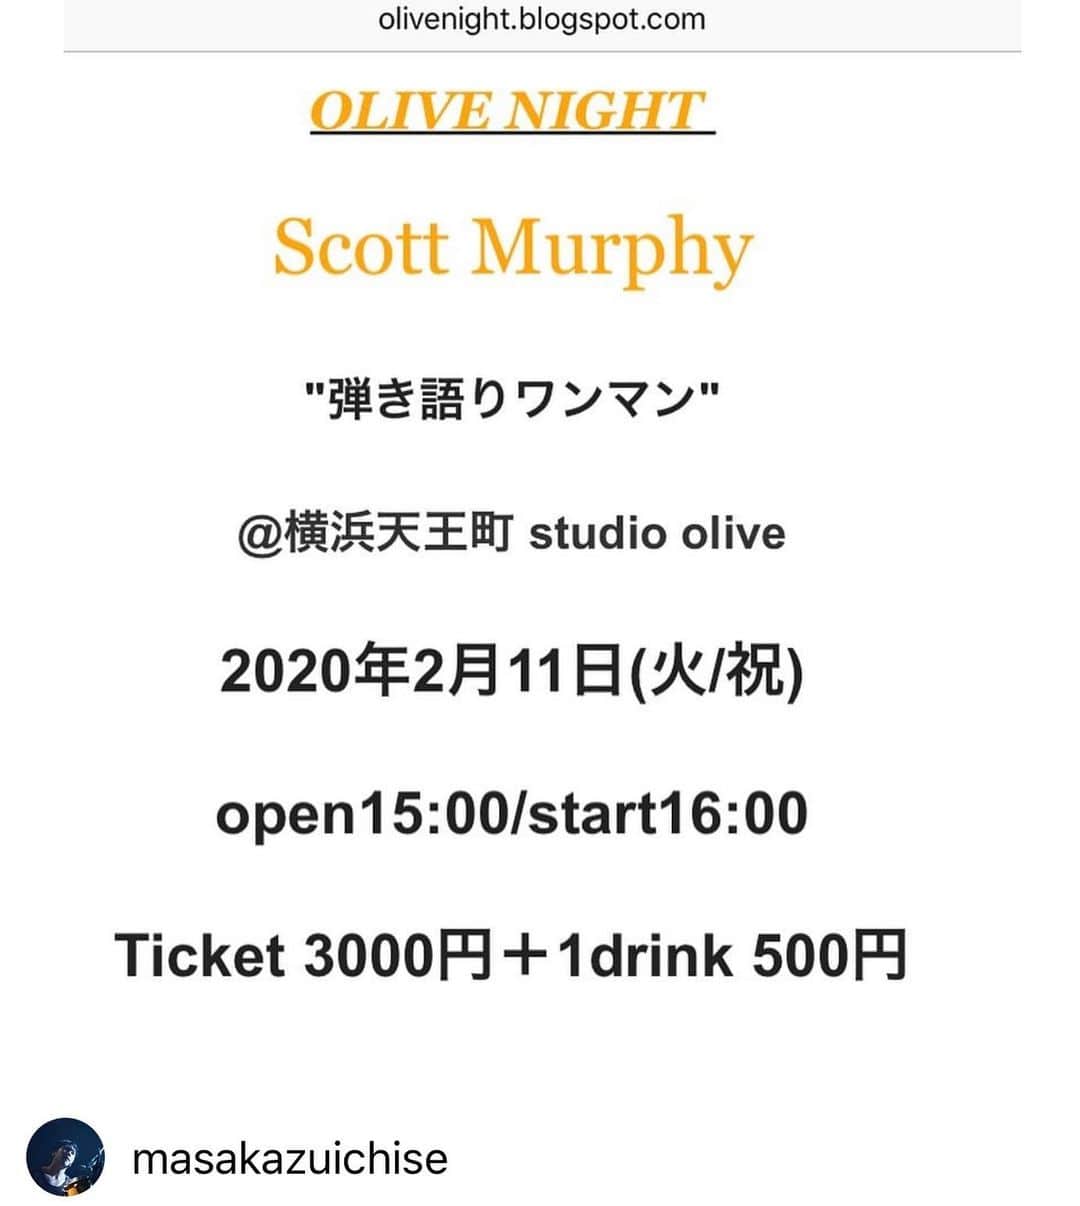 スコット・マーフィーのインスタグラム：「2月11日(火/祝)に、横浜スタジオ・オリーブで弾き語りまーす。僕が生まれた日に一緒に楽しみまshow♬  2020年1月17日(金) 22時よりメール予約開始です！ OLIVE NIGHT  Scott Murphy "弾き語りワンマン" @横浜天王町 studio olive 2020年2月11日(火/祝) OPEN 15:00/START 16:00 ticket3000円＋1drink500円  詳細はこちらから！ olivenight.blogspot.com/?m=1」